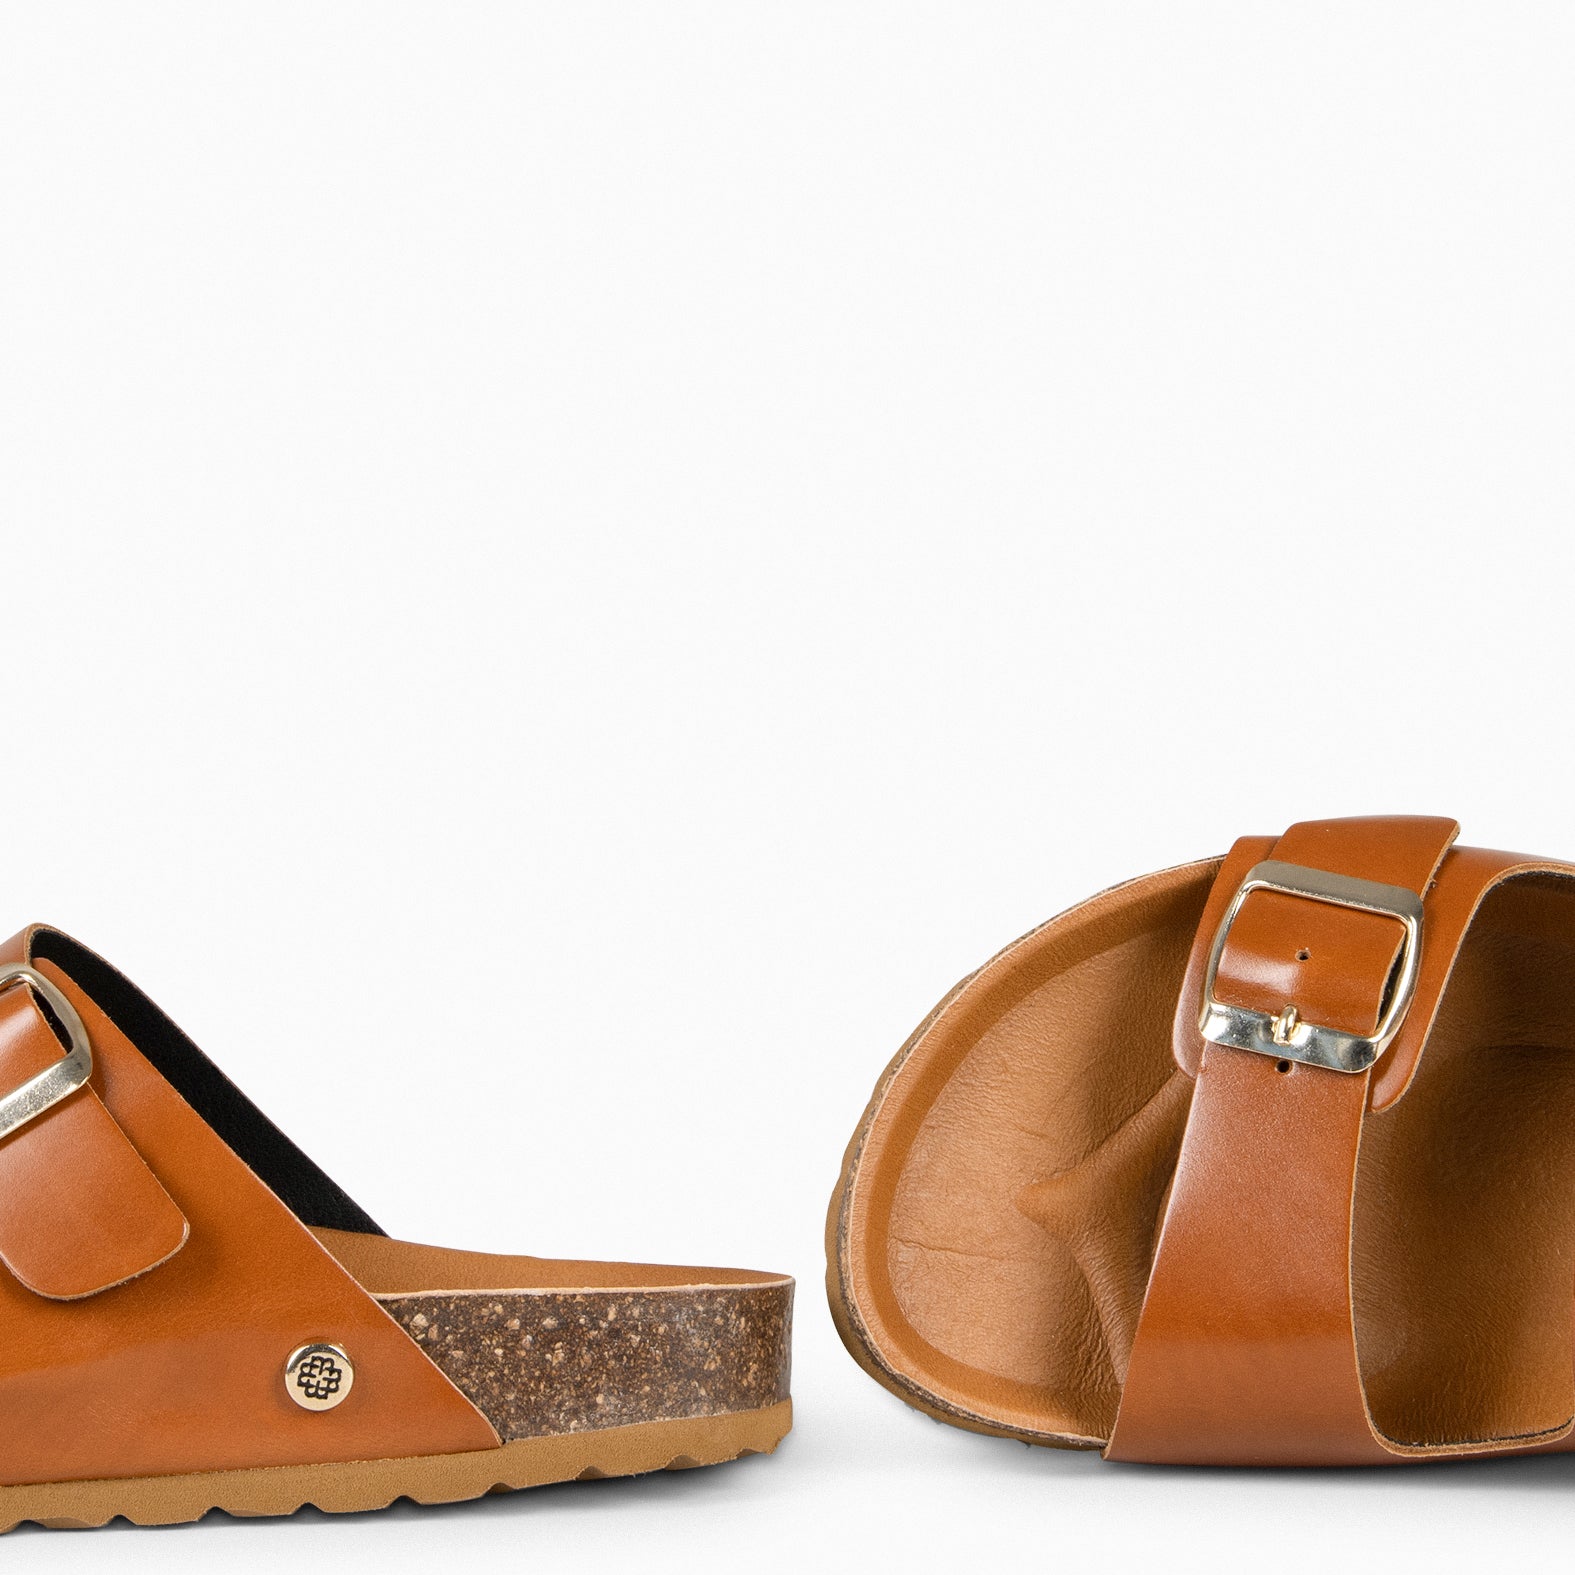 BALI – Sandales claquettes en liège et cuir CAMEL